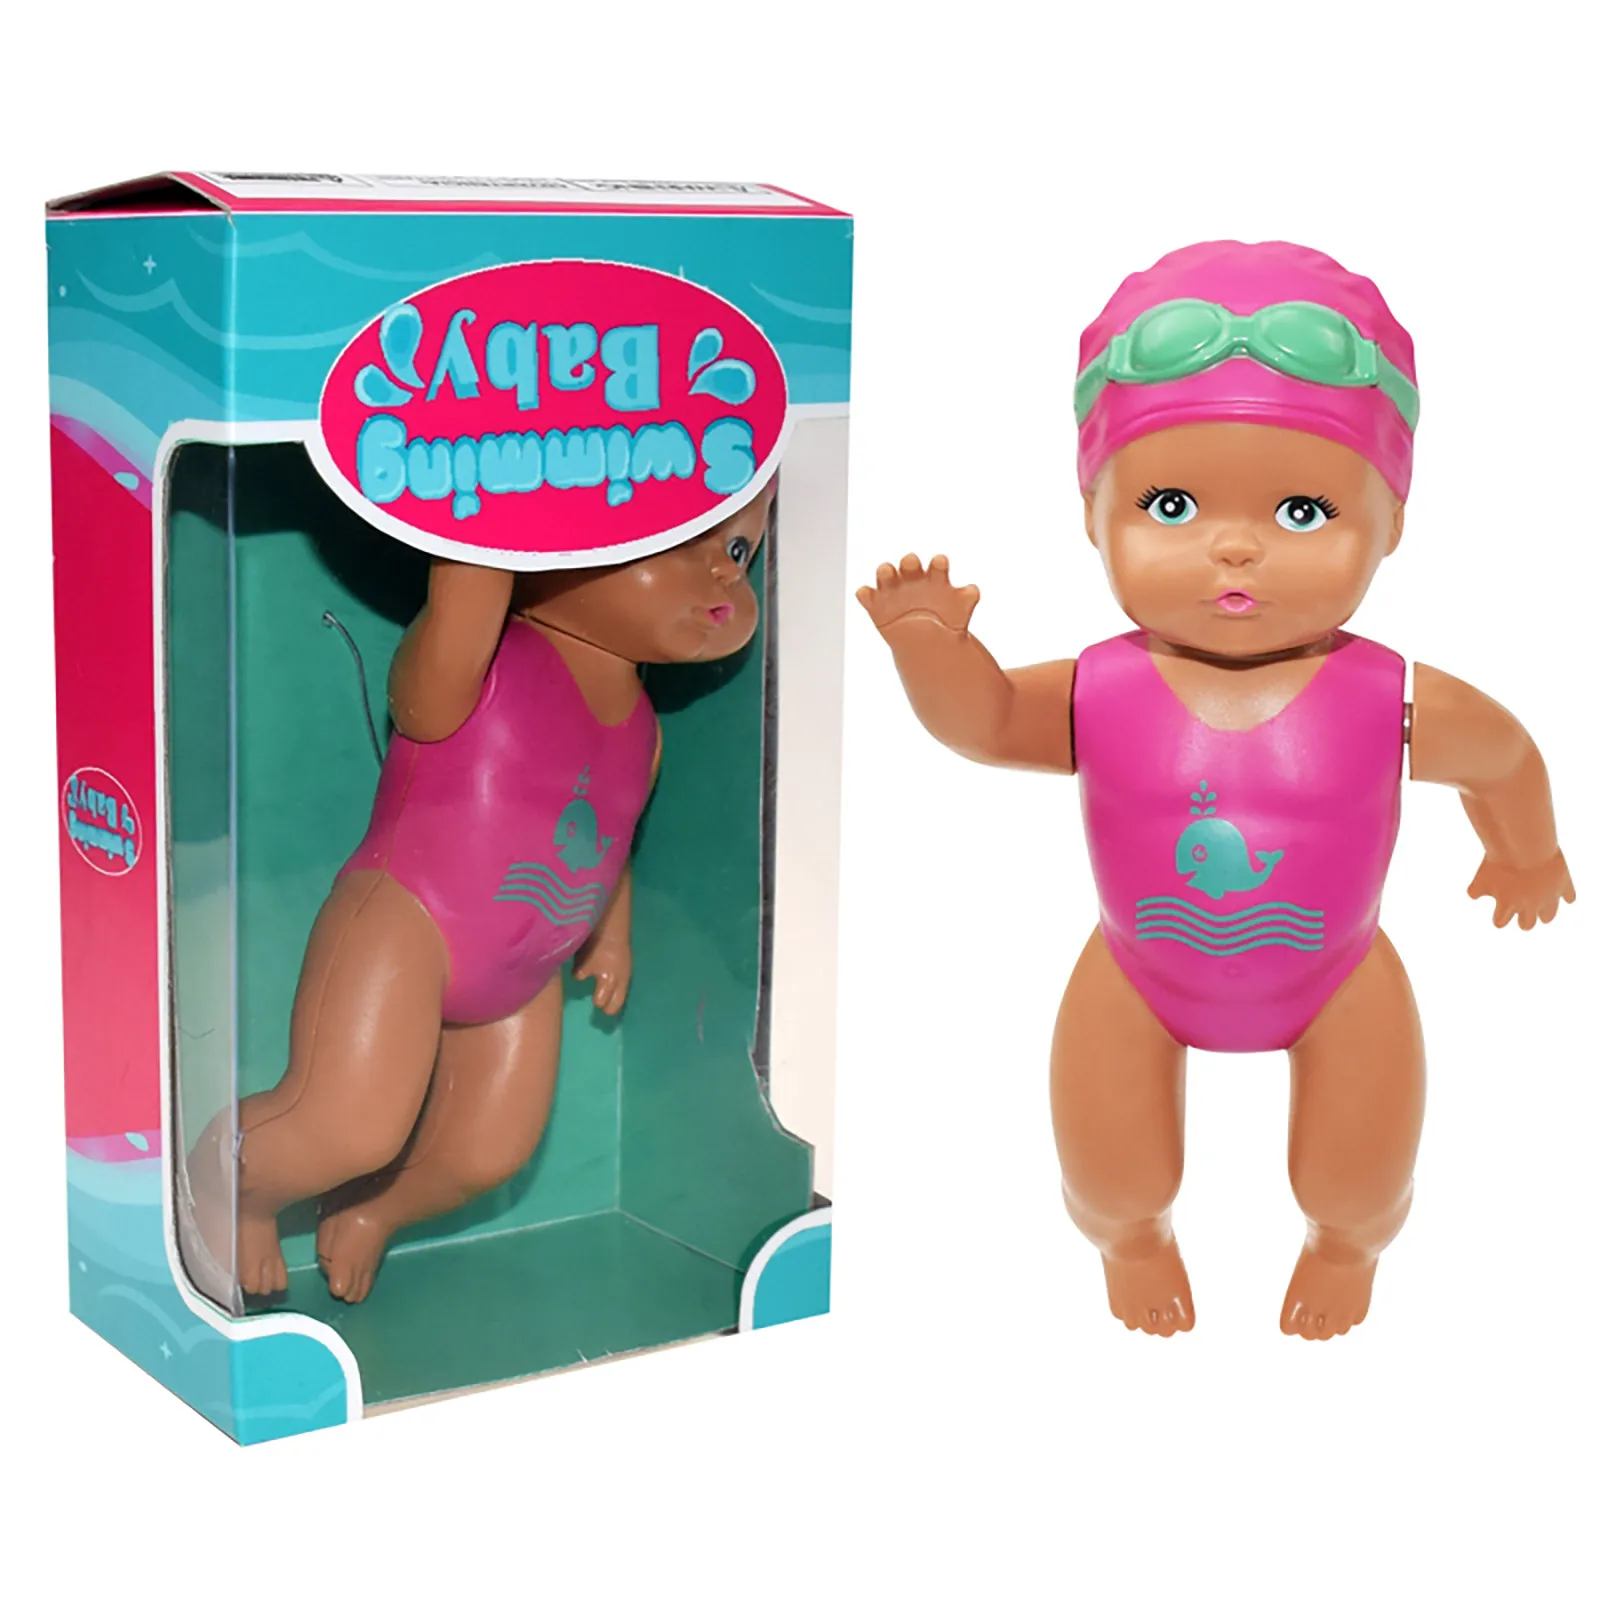 

Детская кукла для купания Электрический могу Купание куклы для ребенка, Водонепроницаемый милые плюшевые игрушки куклы несъедобные рождес...